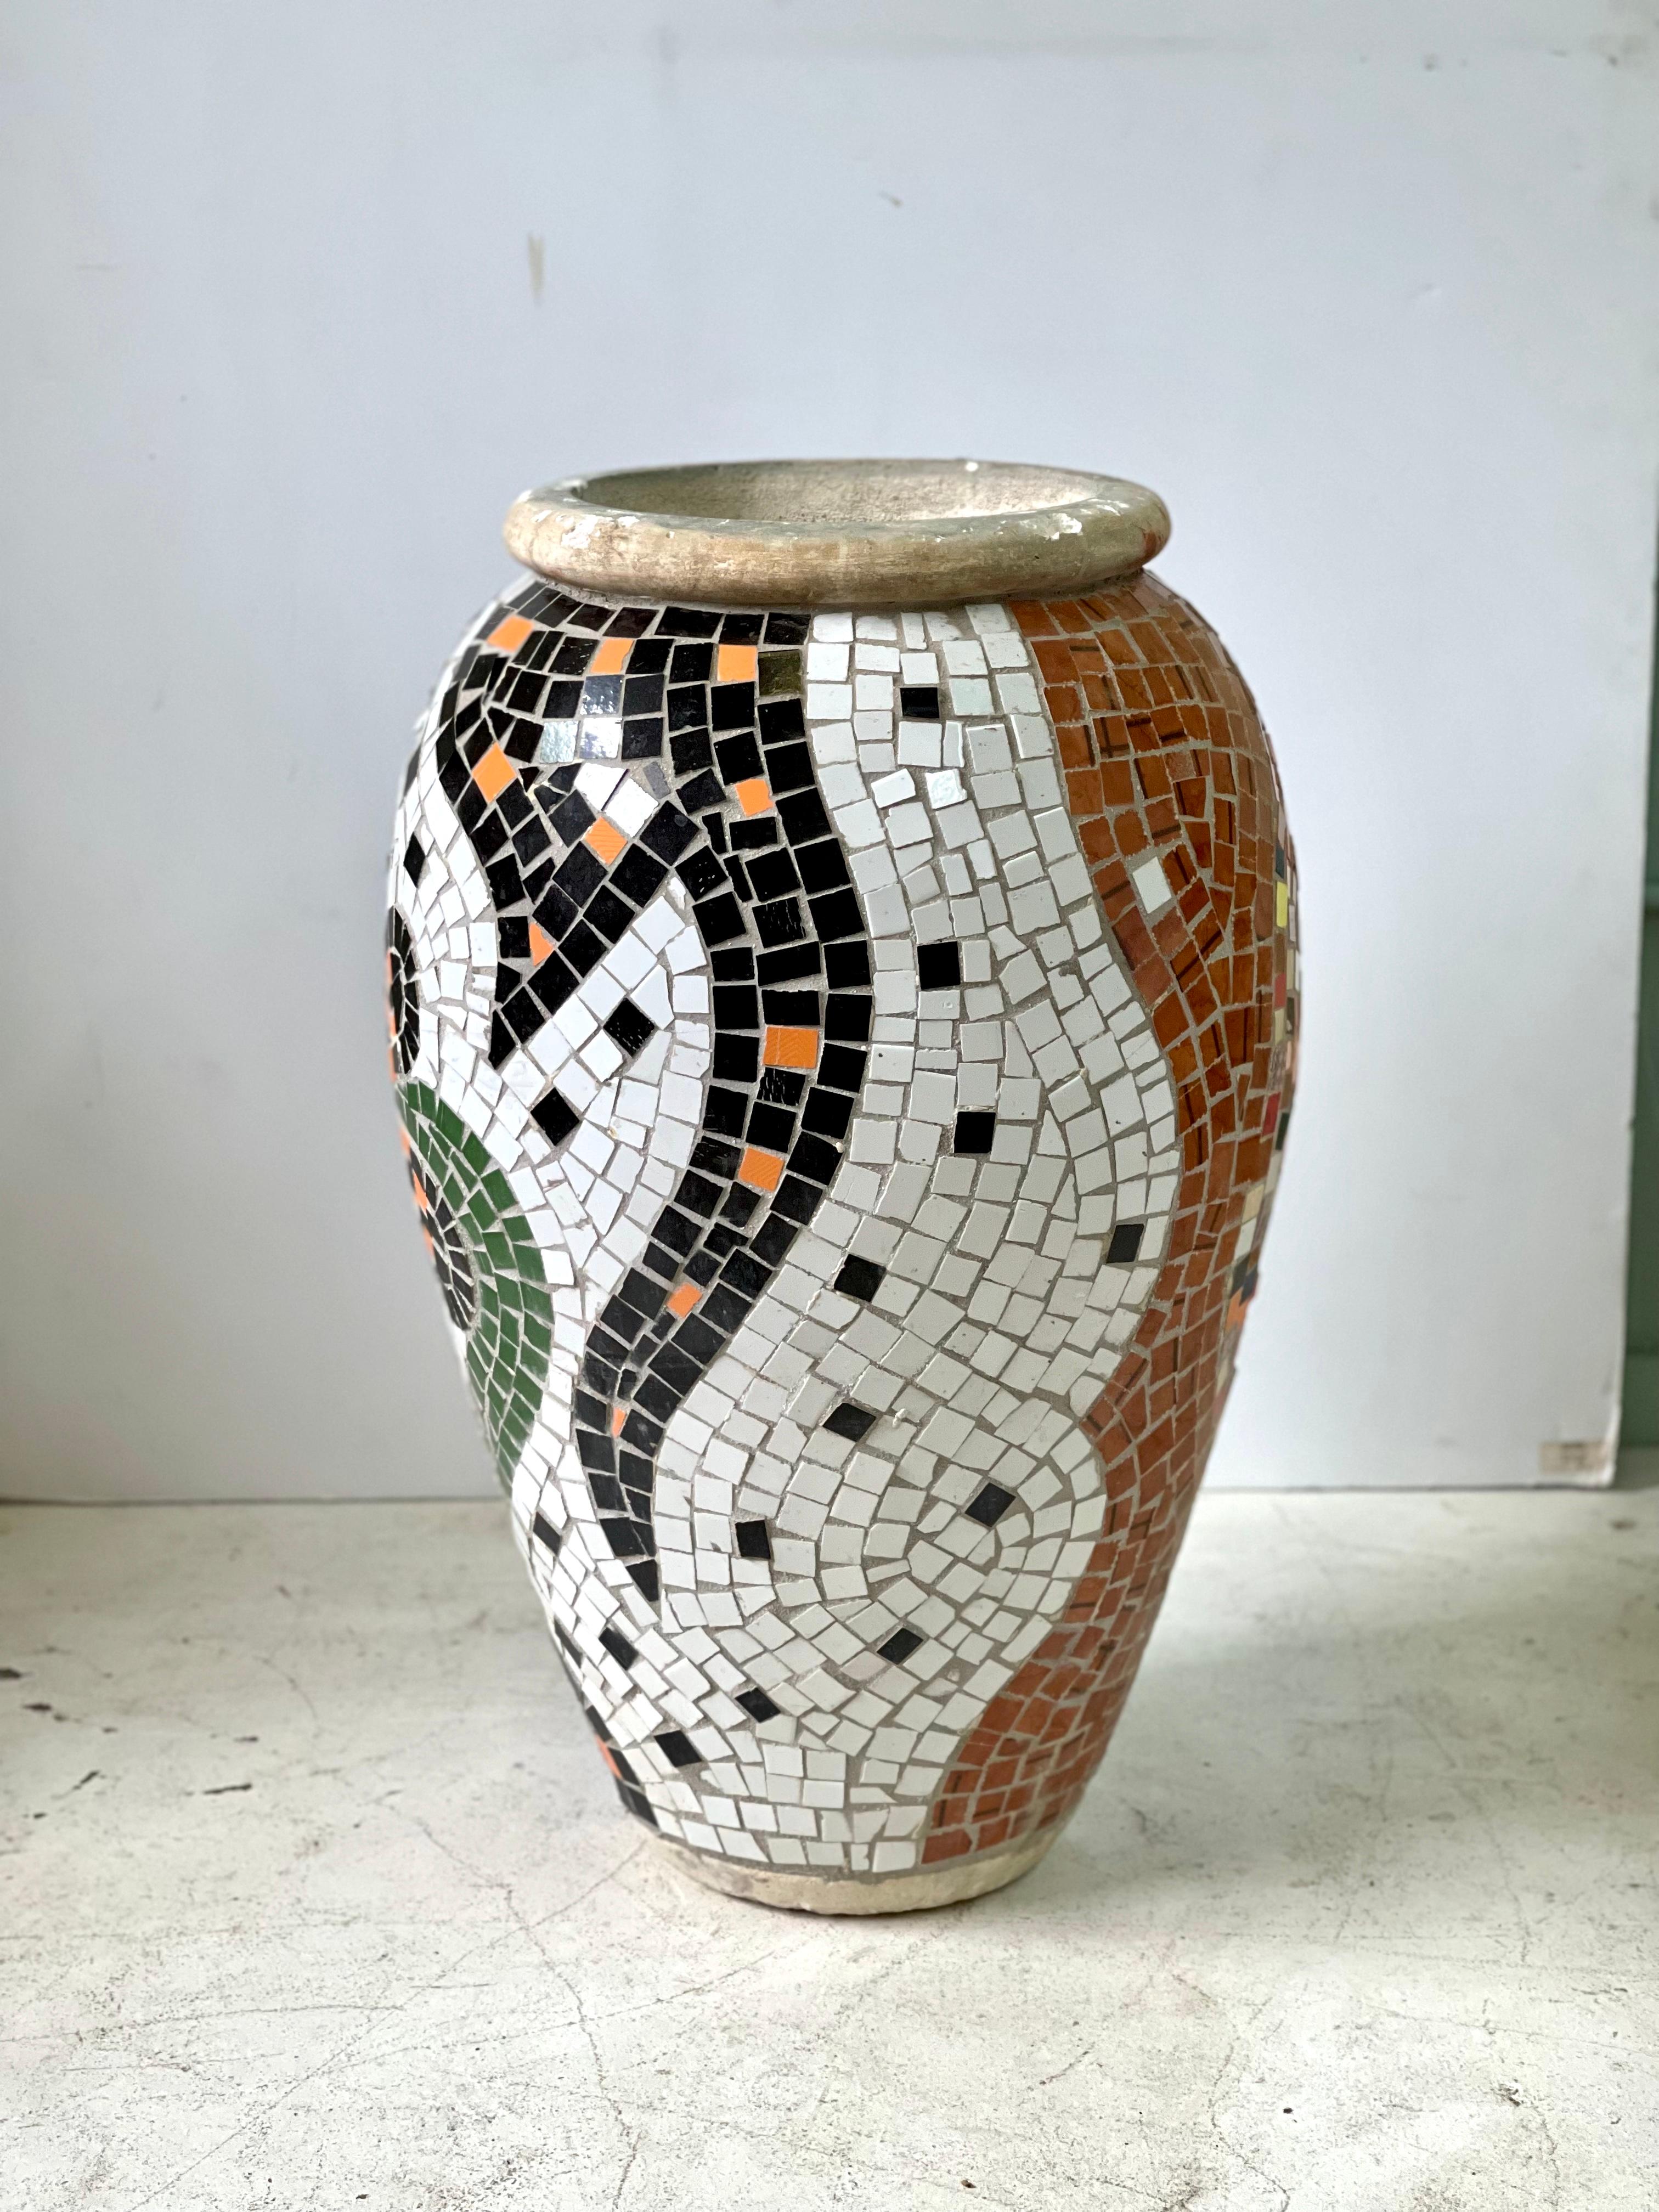 Dies ist ein wunderschönes großes urnenförmiges Mosaikgefäß aus dem 20. Jahrhundert aus dem Mittelmeerraum. Er ist handgefertigt aus in Beton eingelassenen Keramikfliesen mit einem schwarz-weißen Blumenmuster auf der einen Seite und polychromen